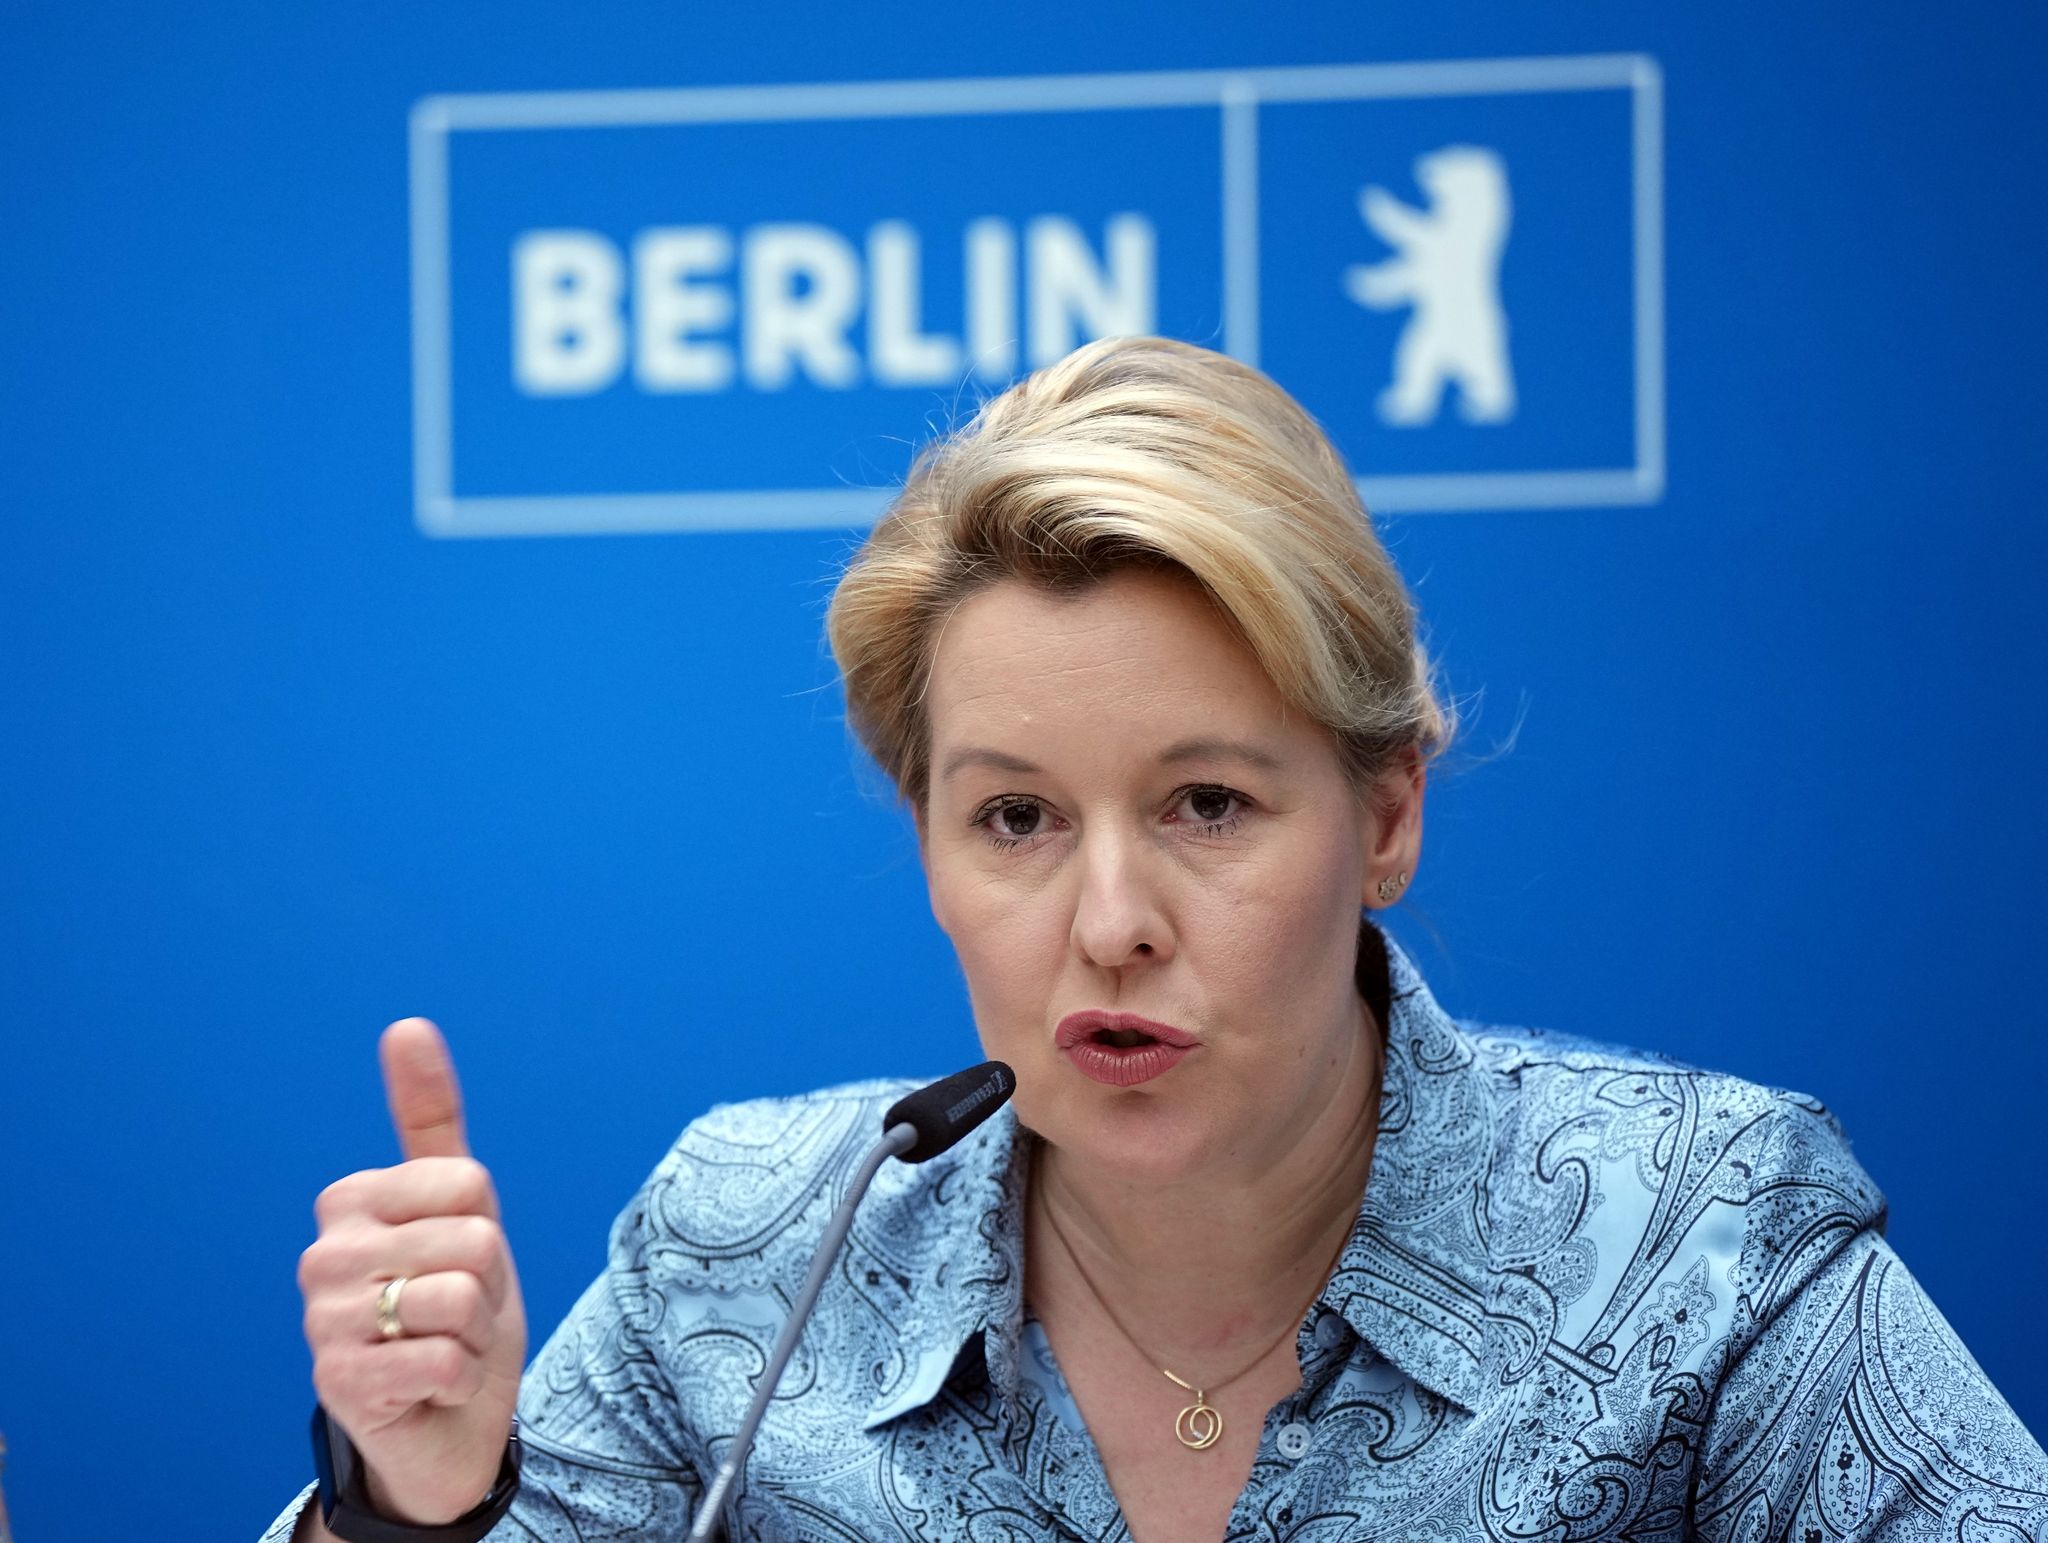 Franziska Giffey (SPD), Regierende Bürgermeisterin von Berlin, spricht während einer Pressekonferenz.